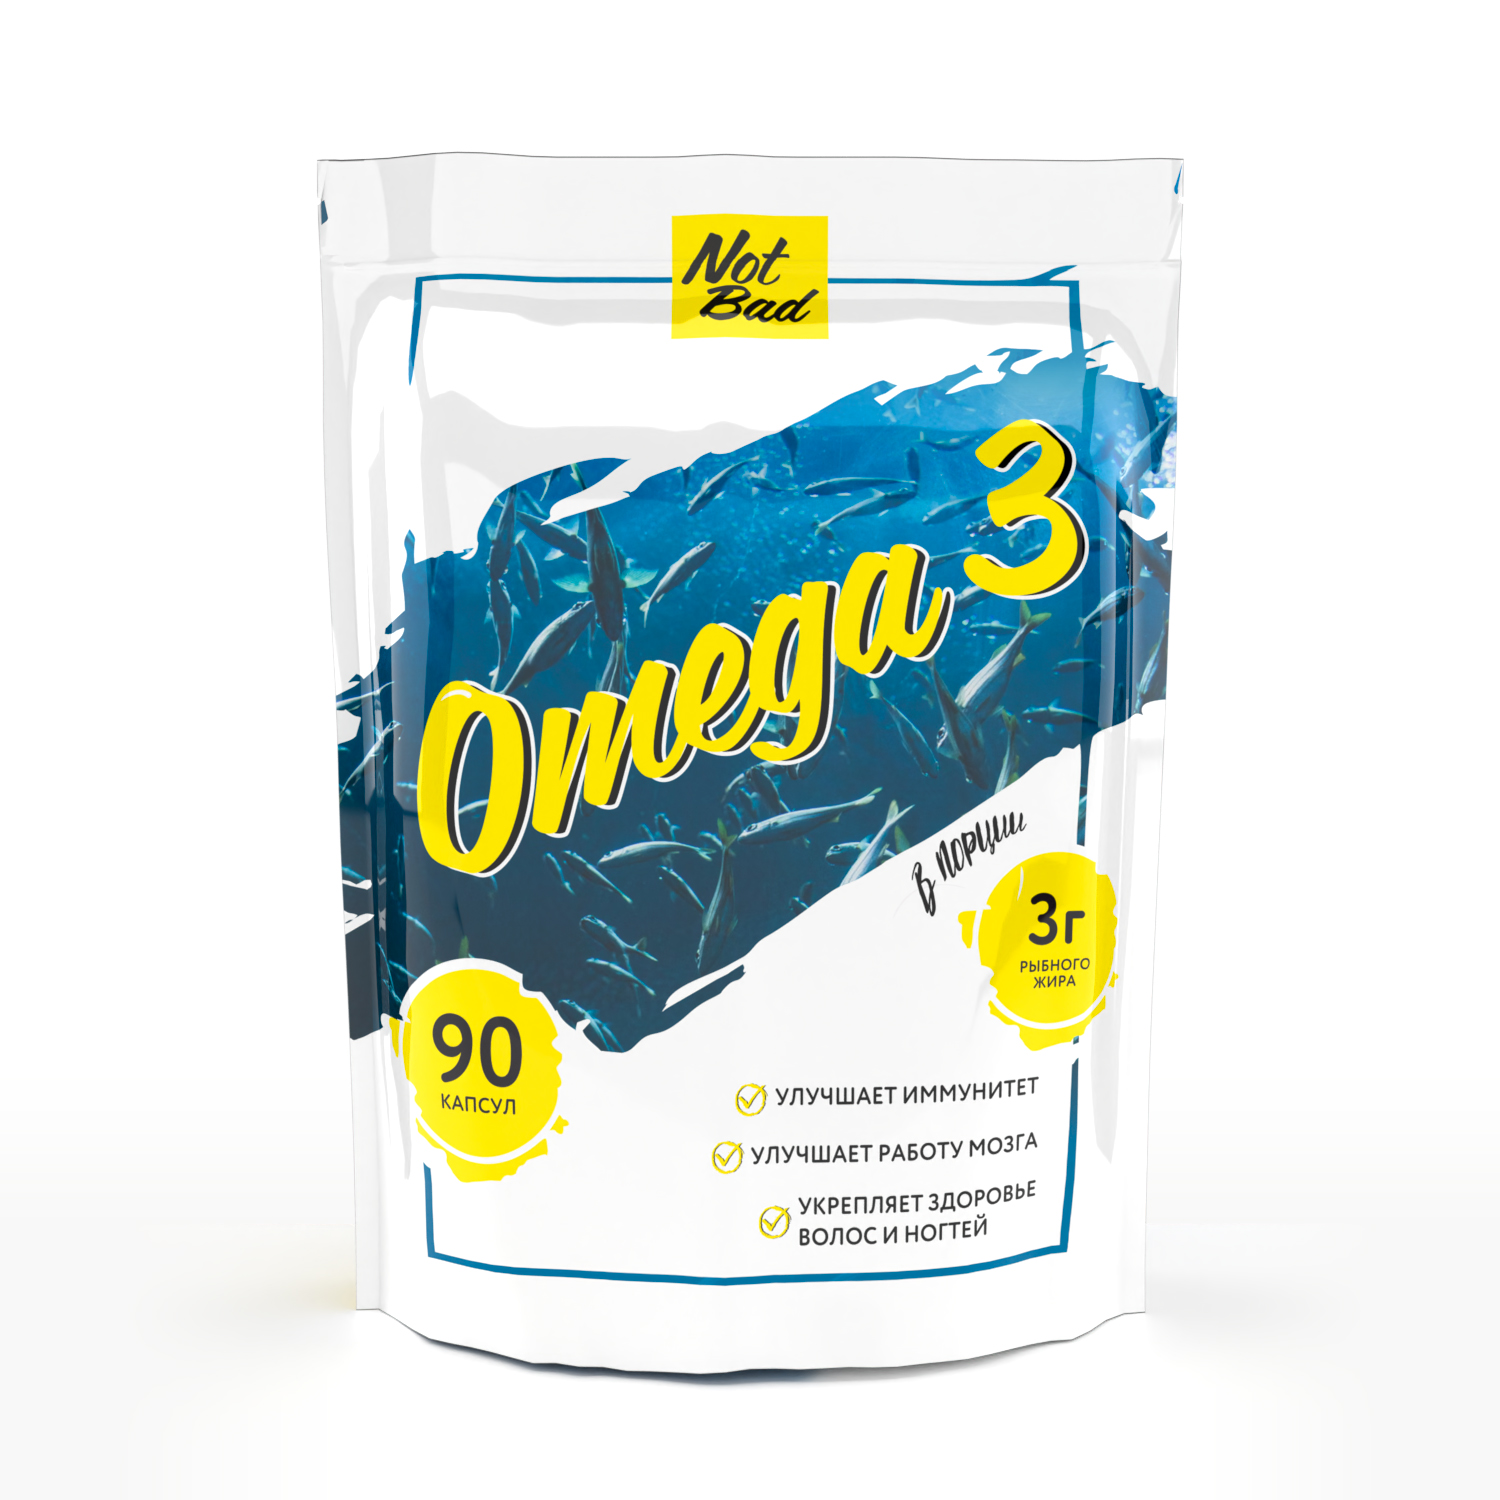 Купить Омега-3 рыбный жир NOTBAD Omega-3 капсулы 90 шт.